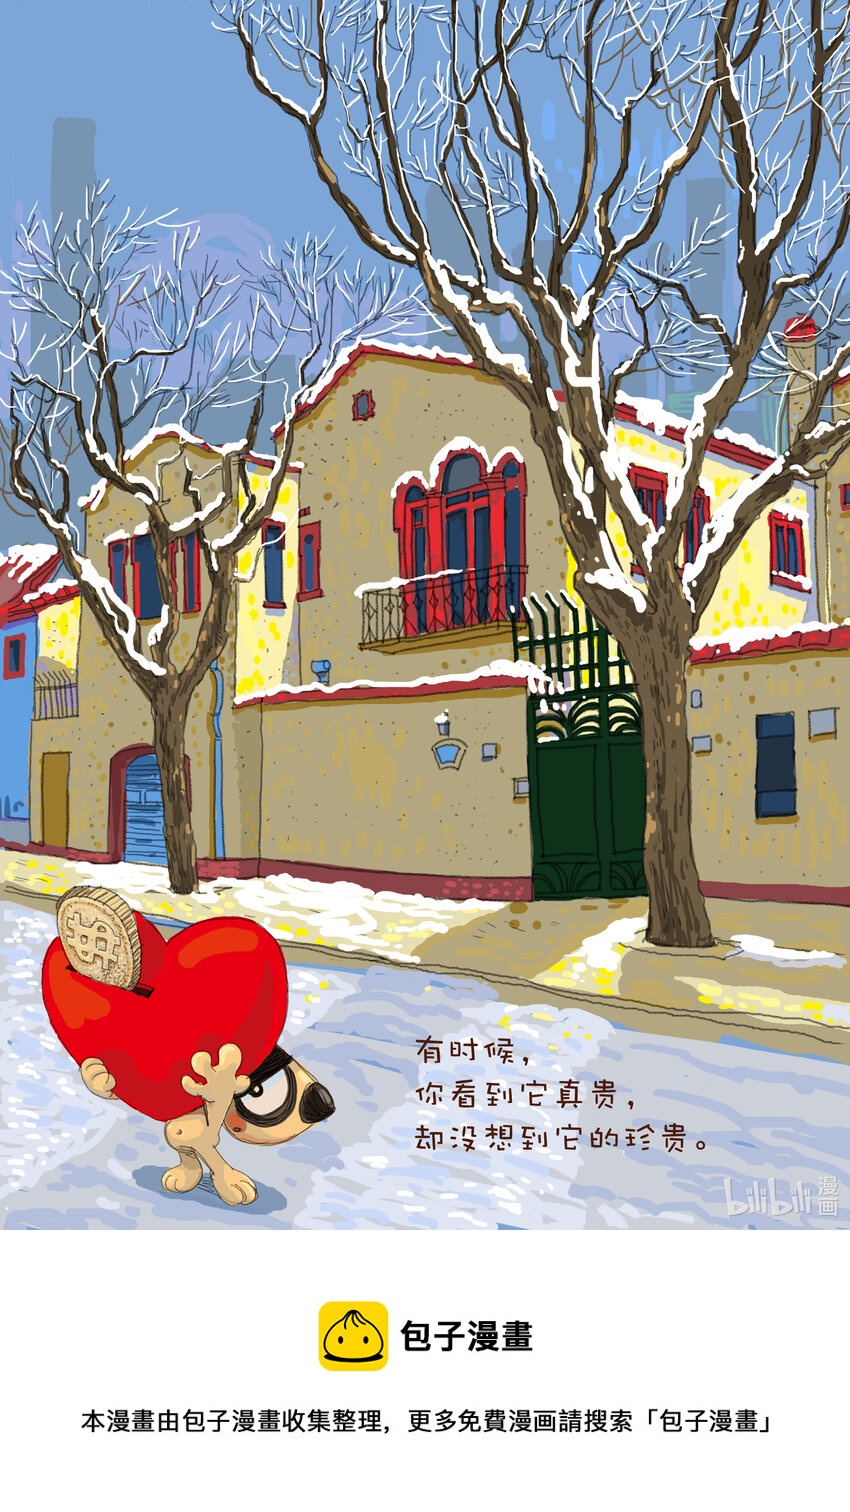 喜欢上海的理由 - 甘峰 狗与城市生活 - 老洋房的四季 - 1